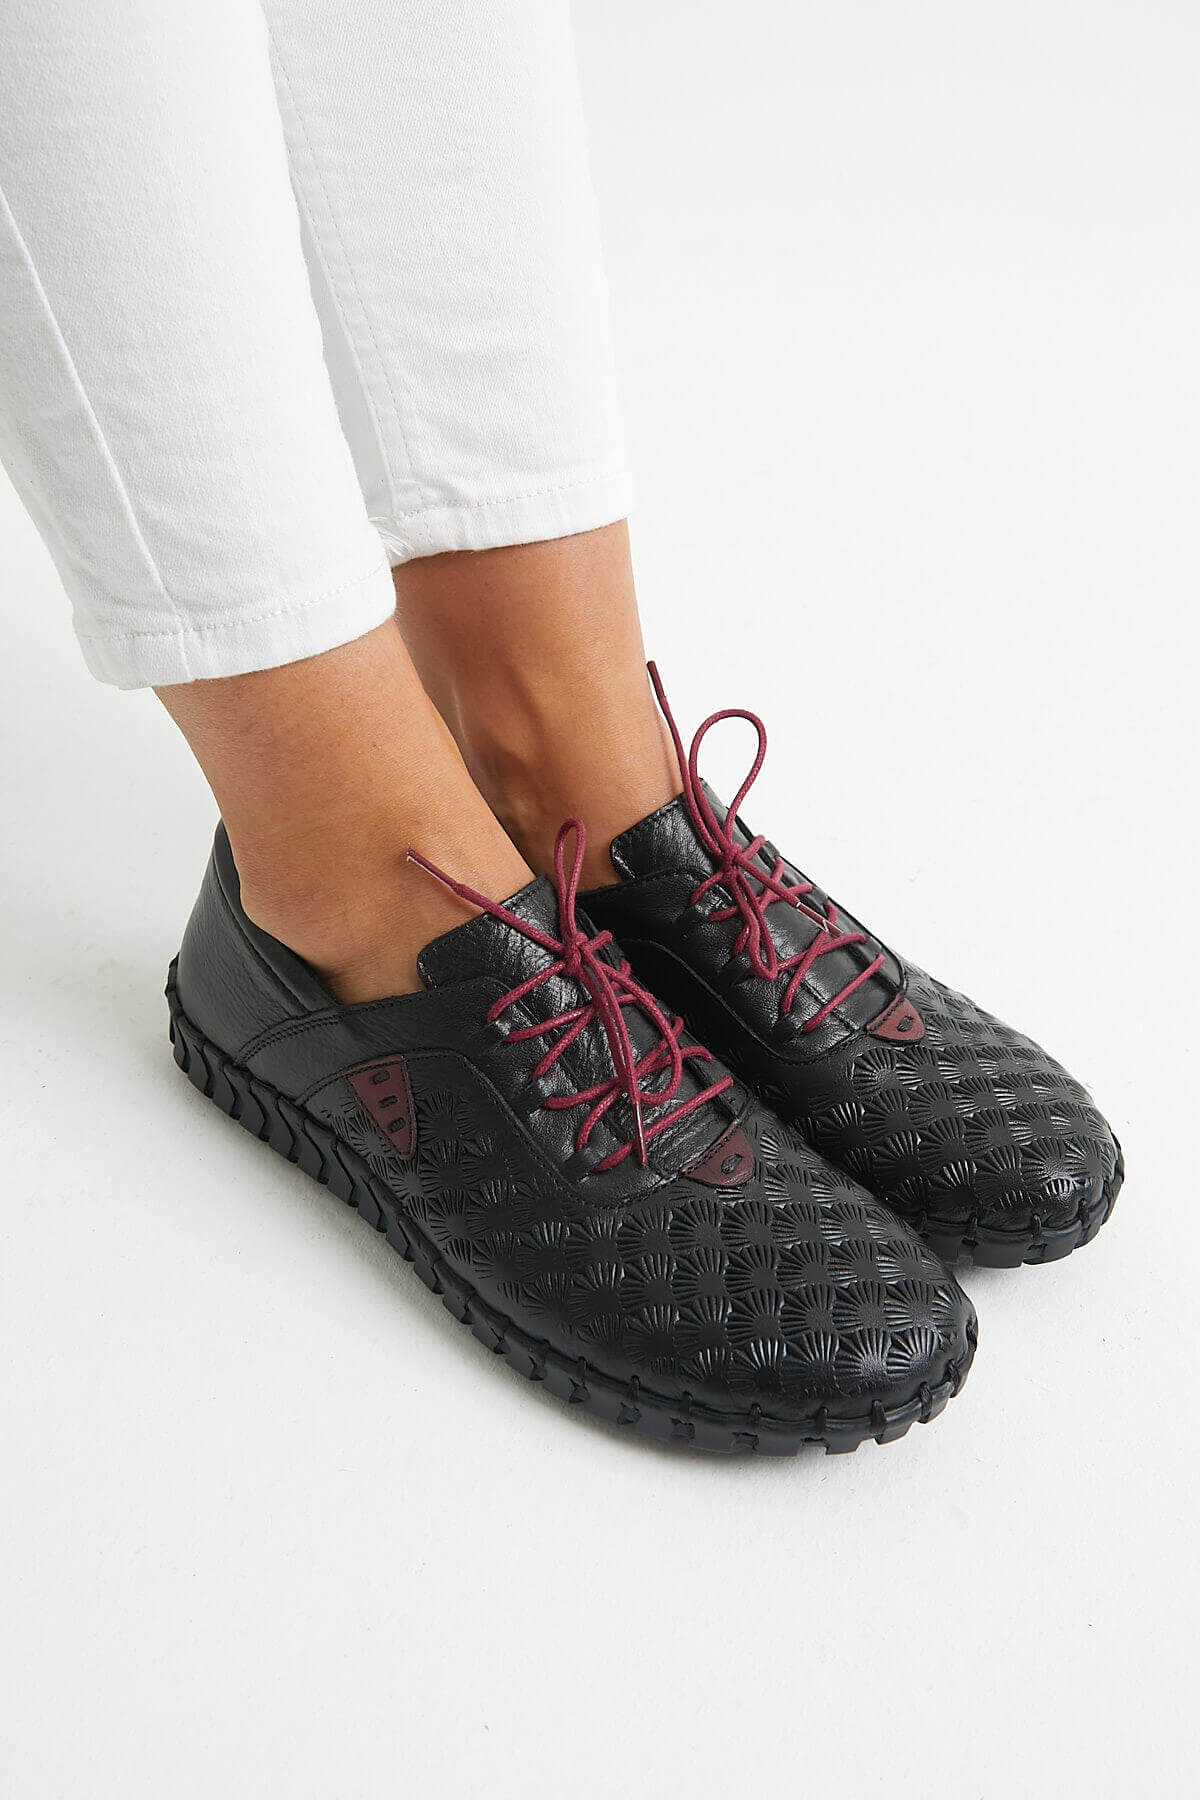 Kadın Comfort Ayakkabı Siyah 2010705Y - Thumbnail